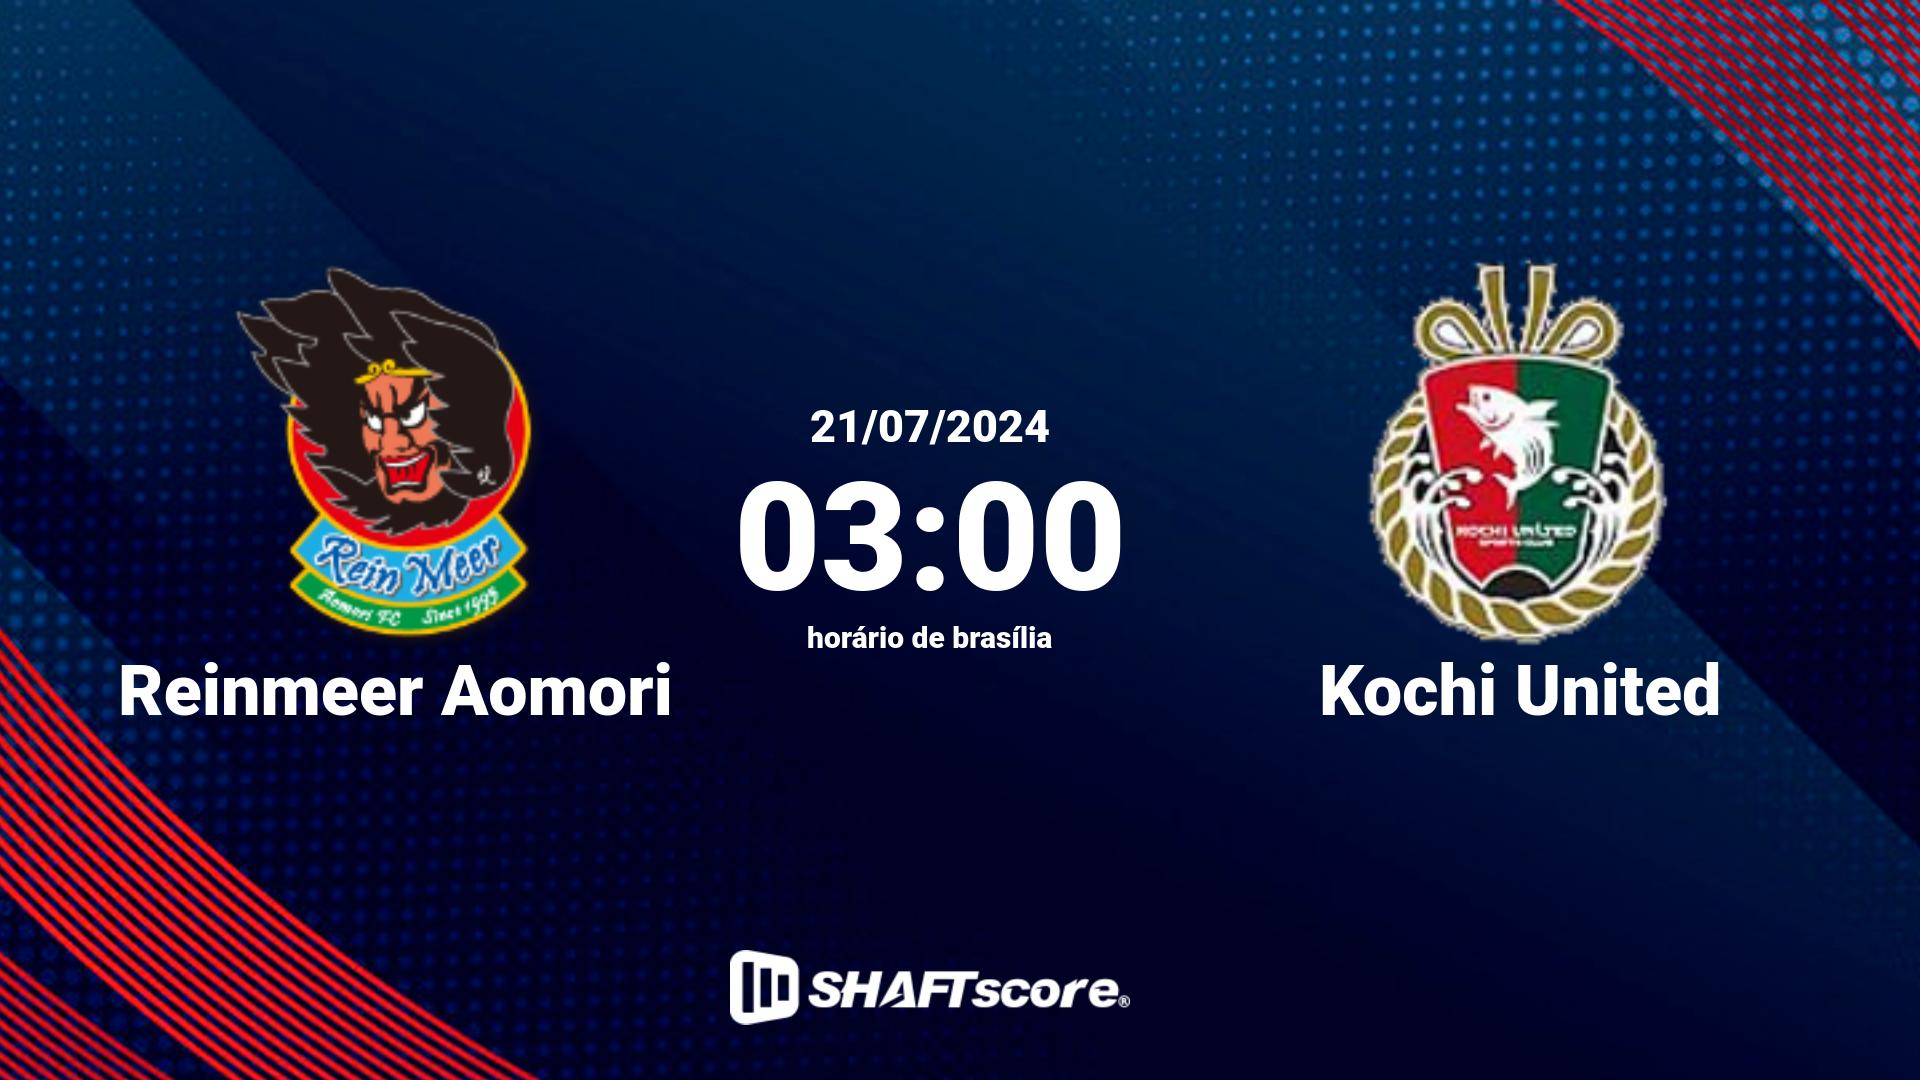 Estatísticas do jogo Reinmeer Aomori vs Kochi United 21.07 03:00